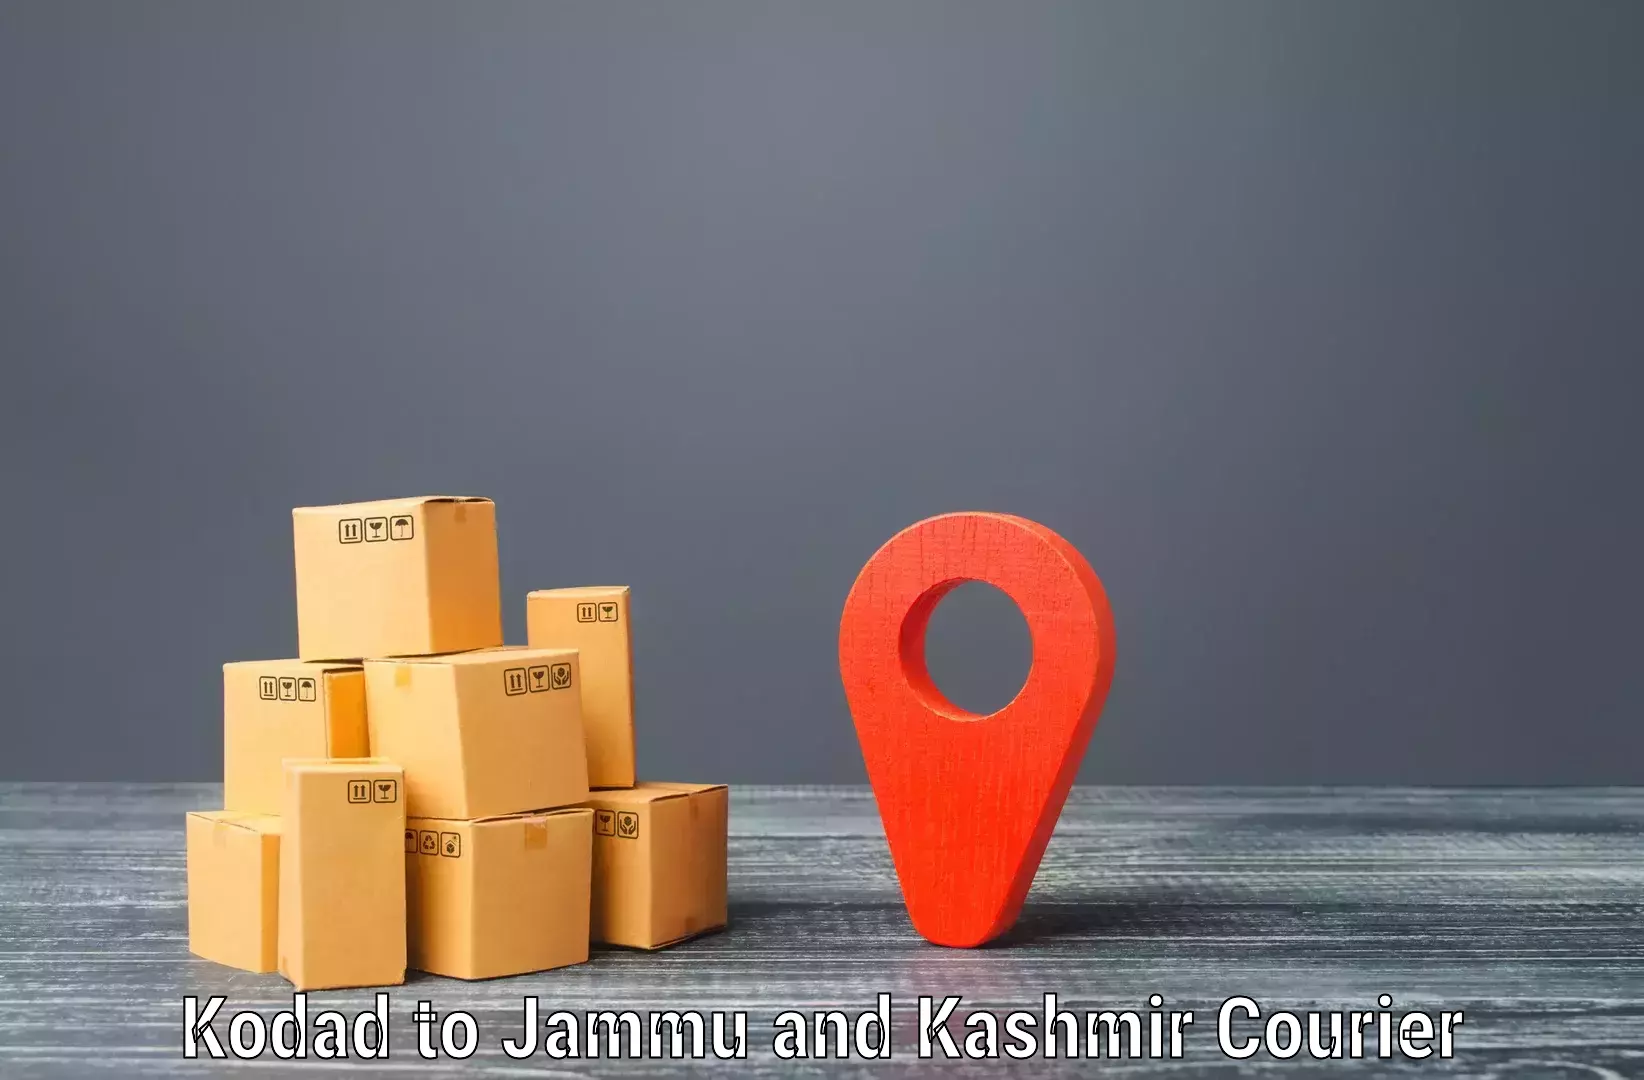 Efficient parcel service Kodad to Jammu